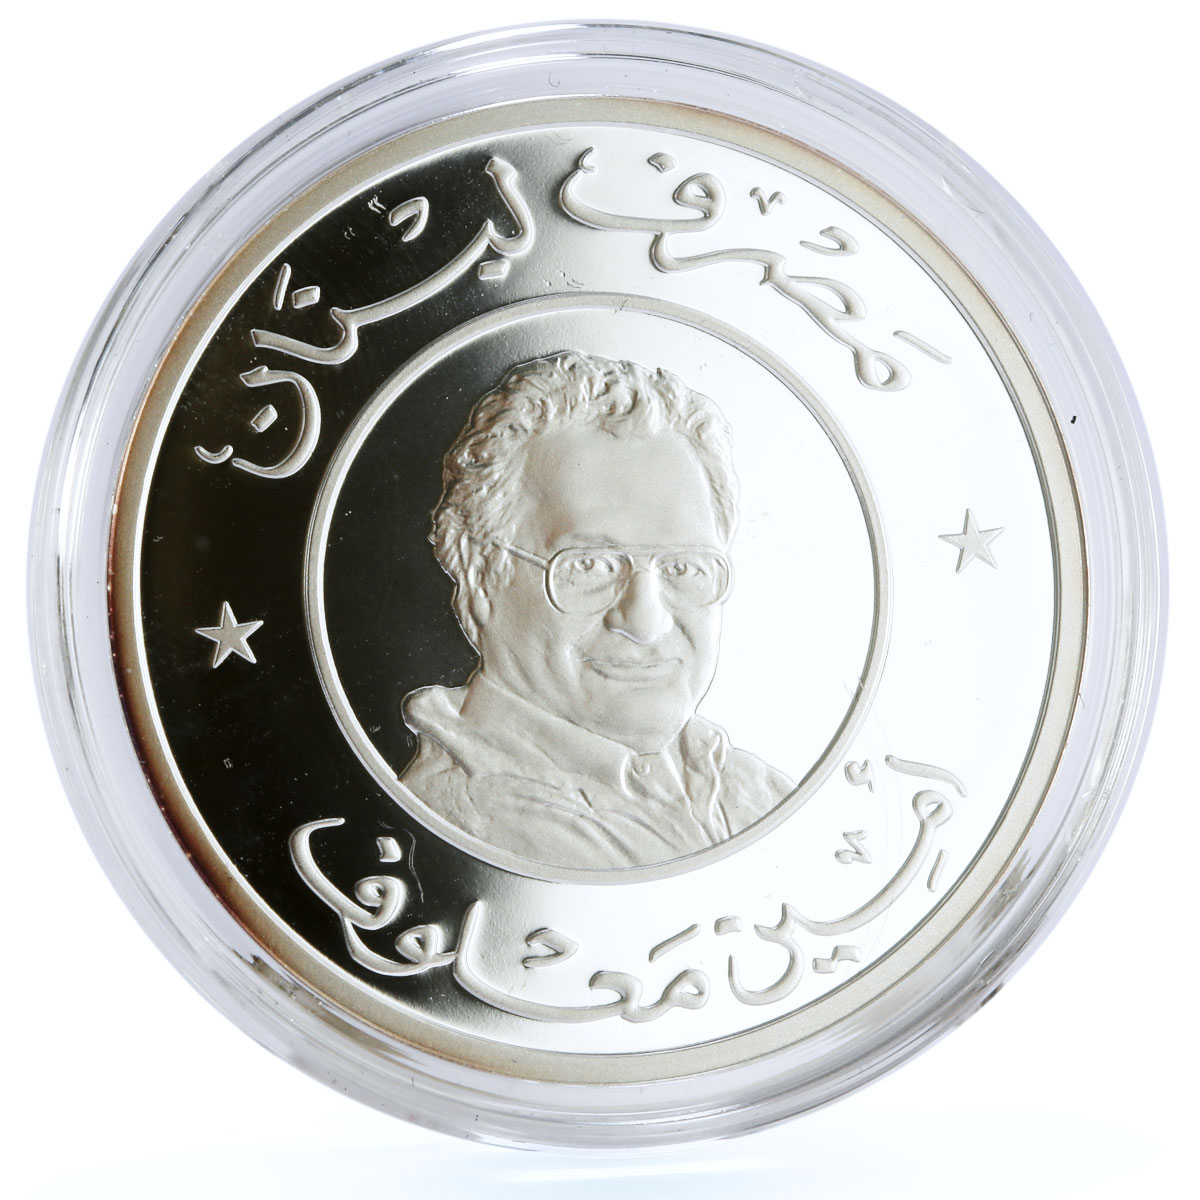 Lebanon 1 livre Writer Amin Maalouf French Academy Cedar Tree silver coin 2012